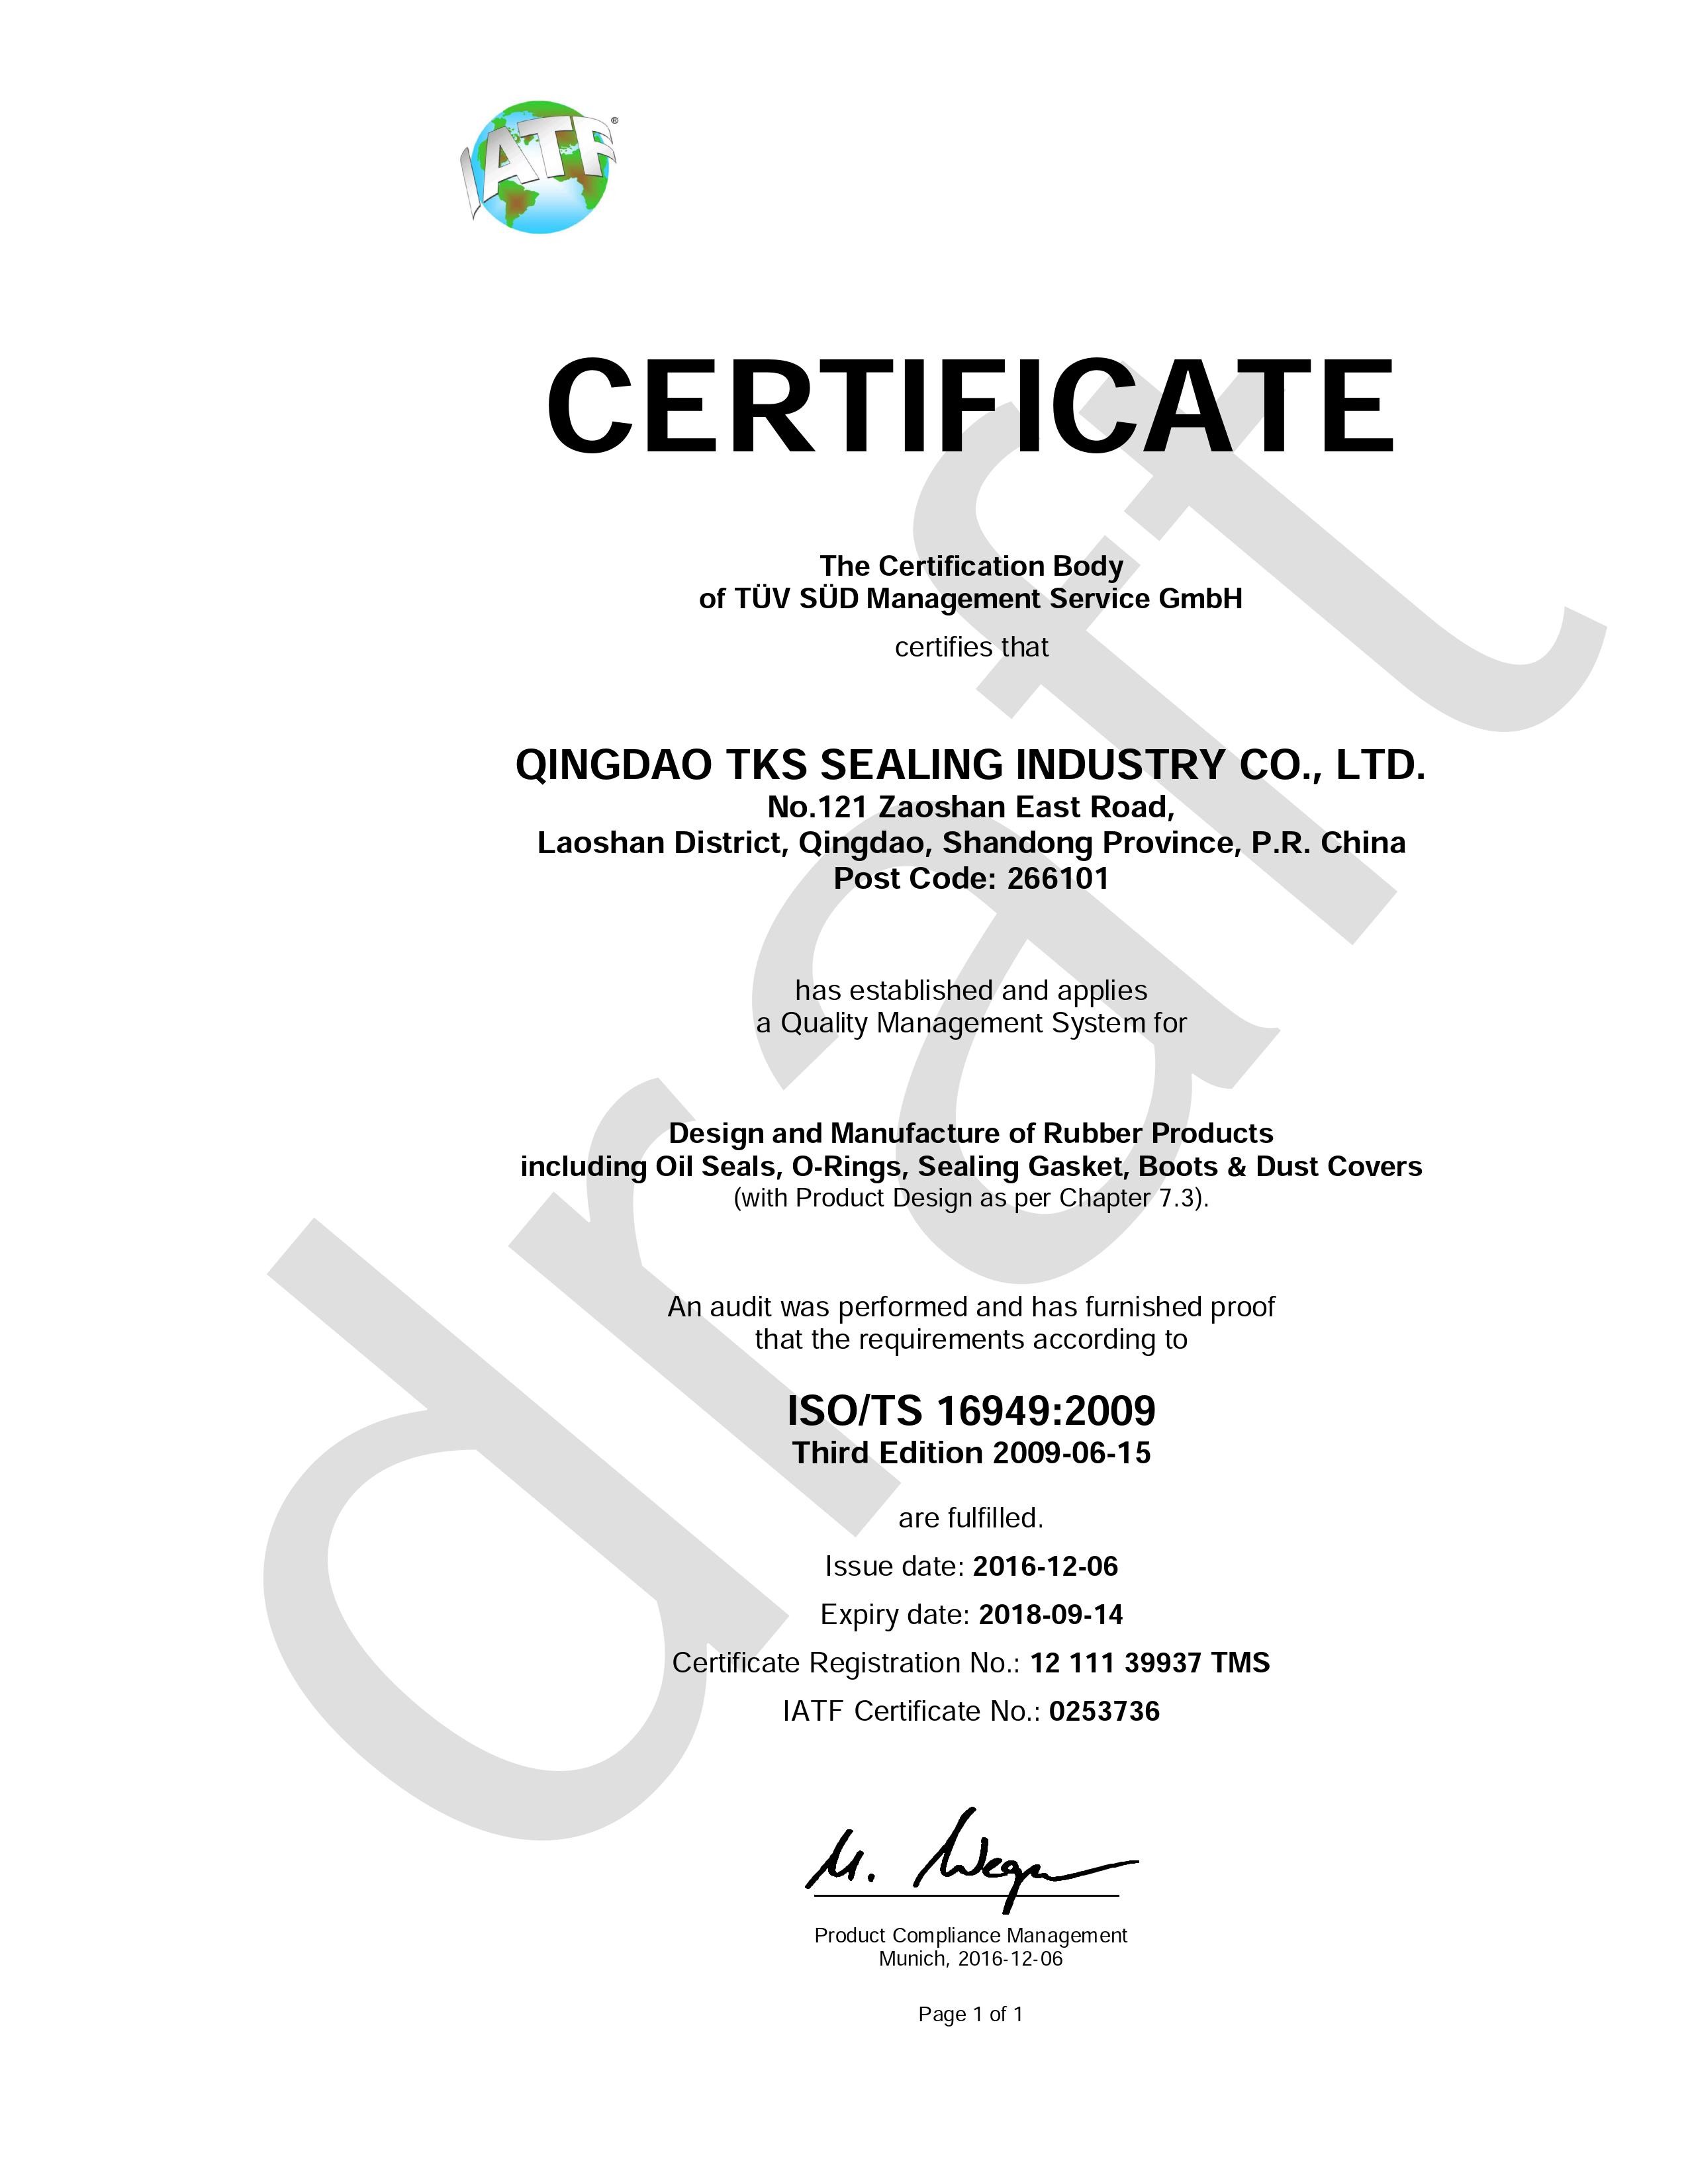 ประเทศจีน Qingdao Global Sealing-tec co., Ltd รับรอง